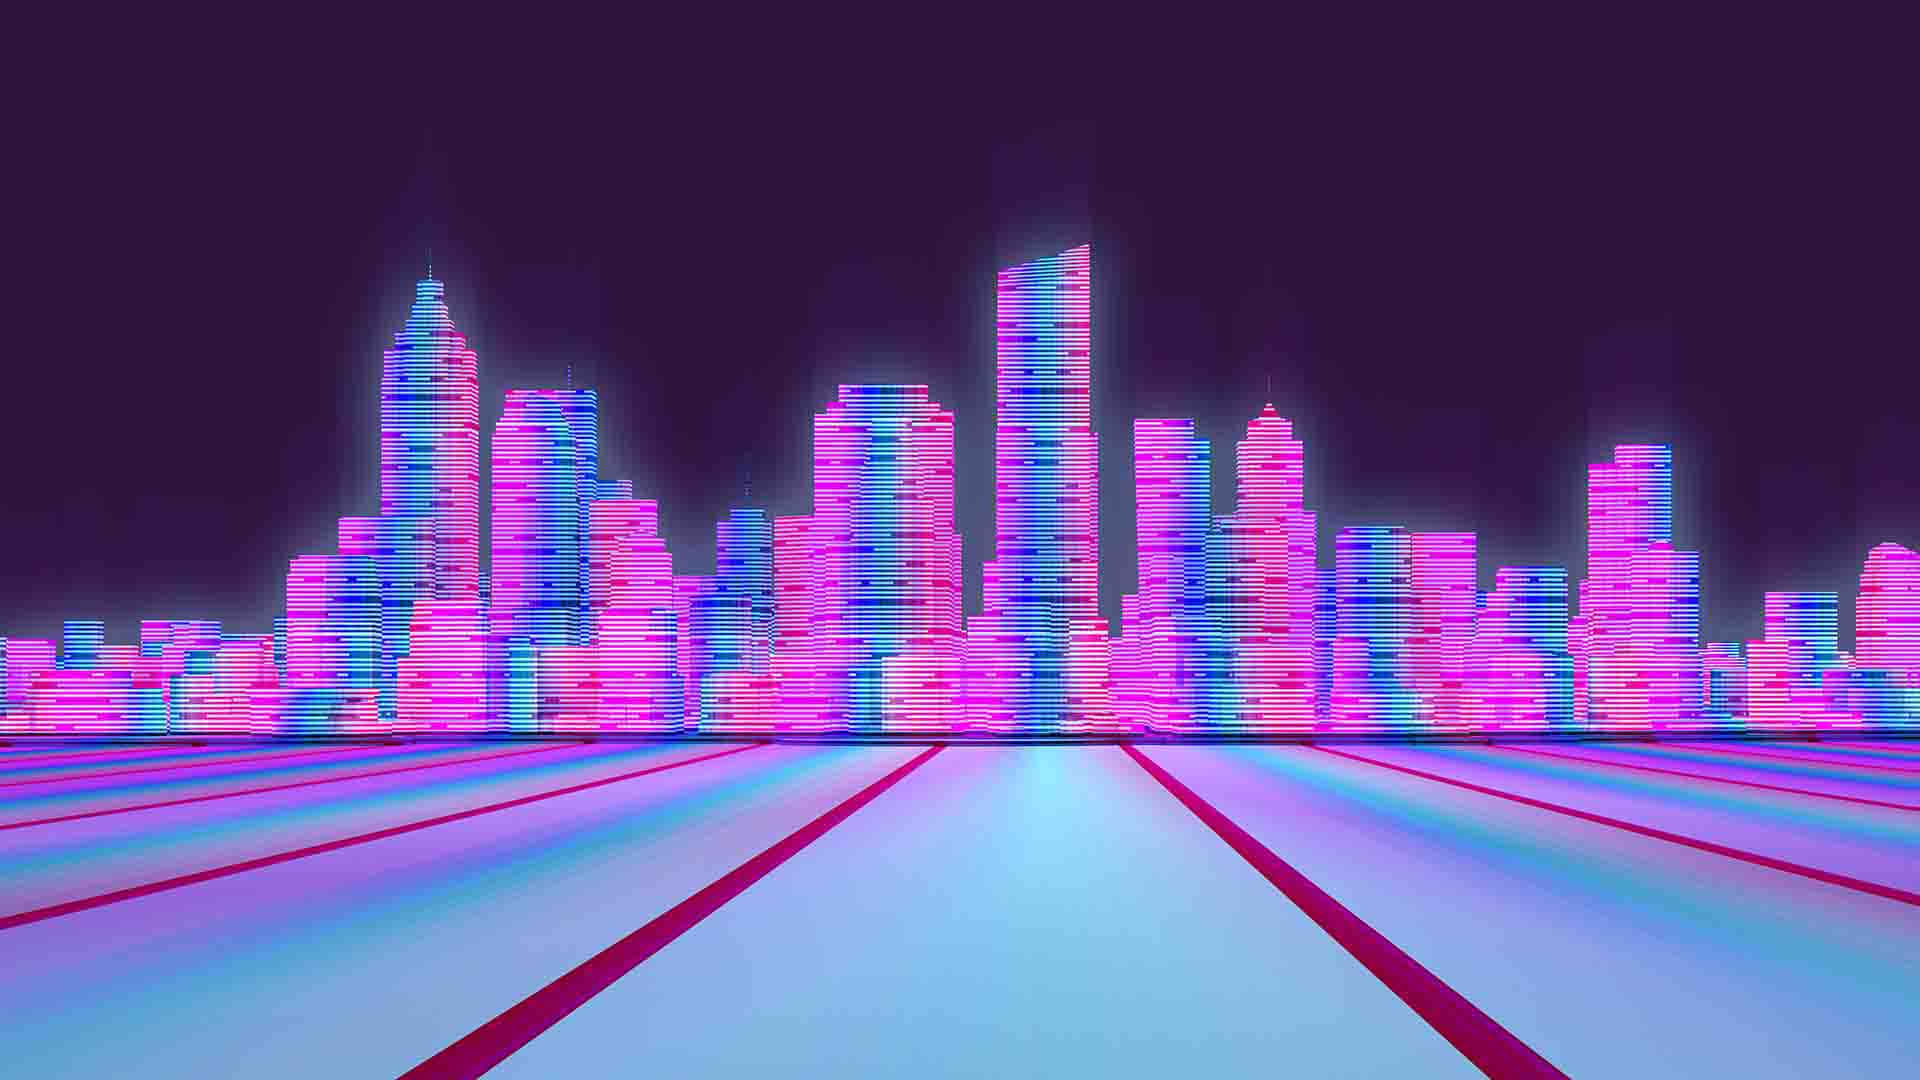 "A Retro-Futuristic Vibe in Synthwave City" Wallpaper